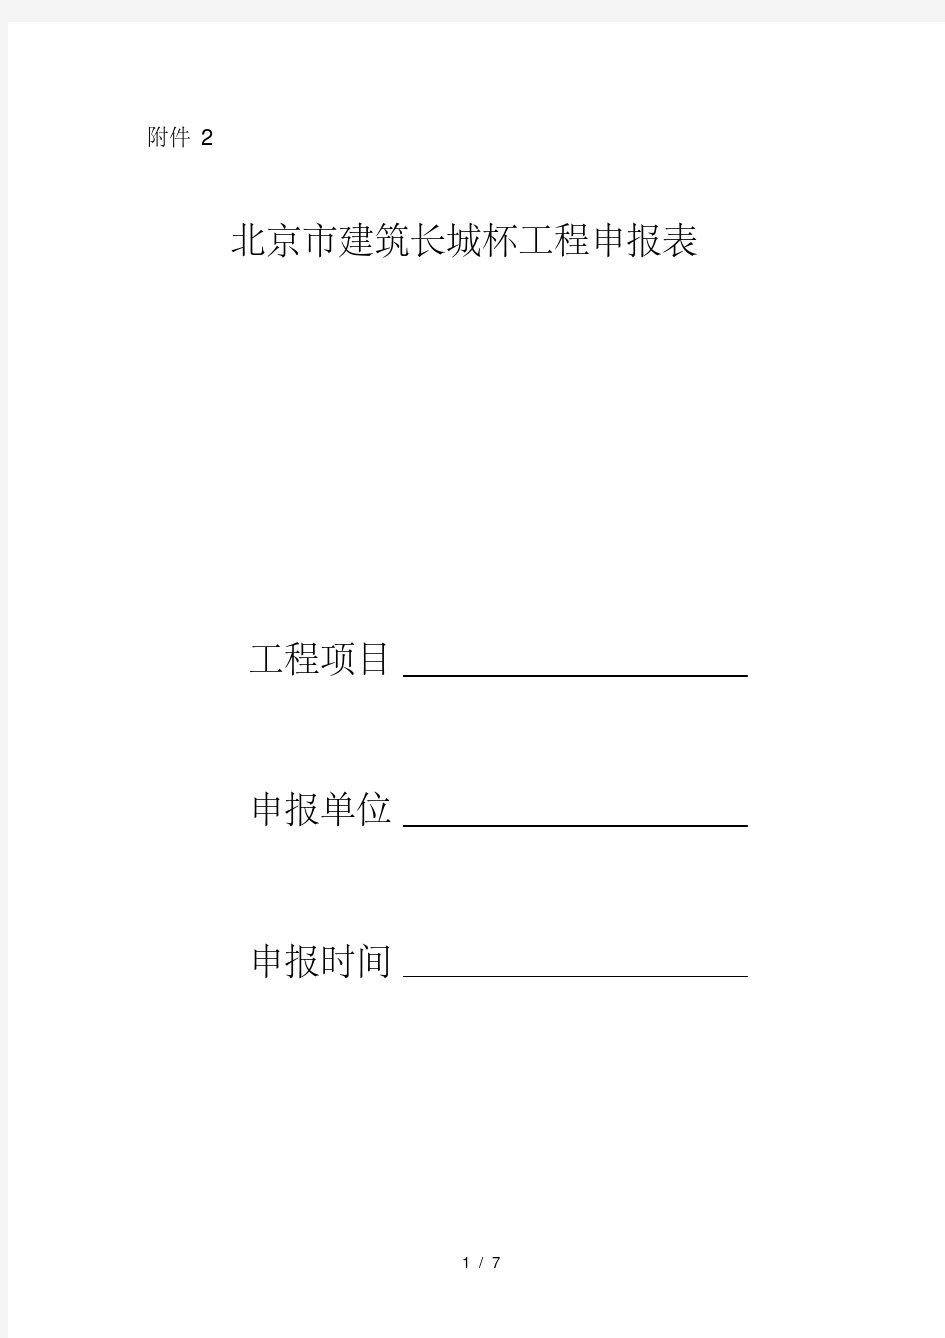 北京市建筑长城杯工程申报表(20200614142742)